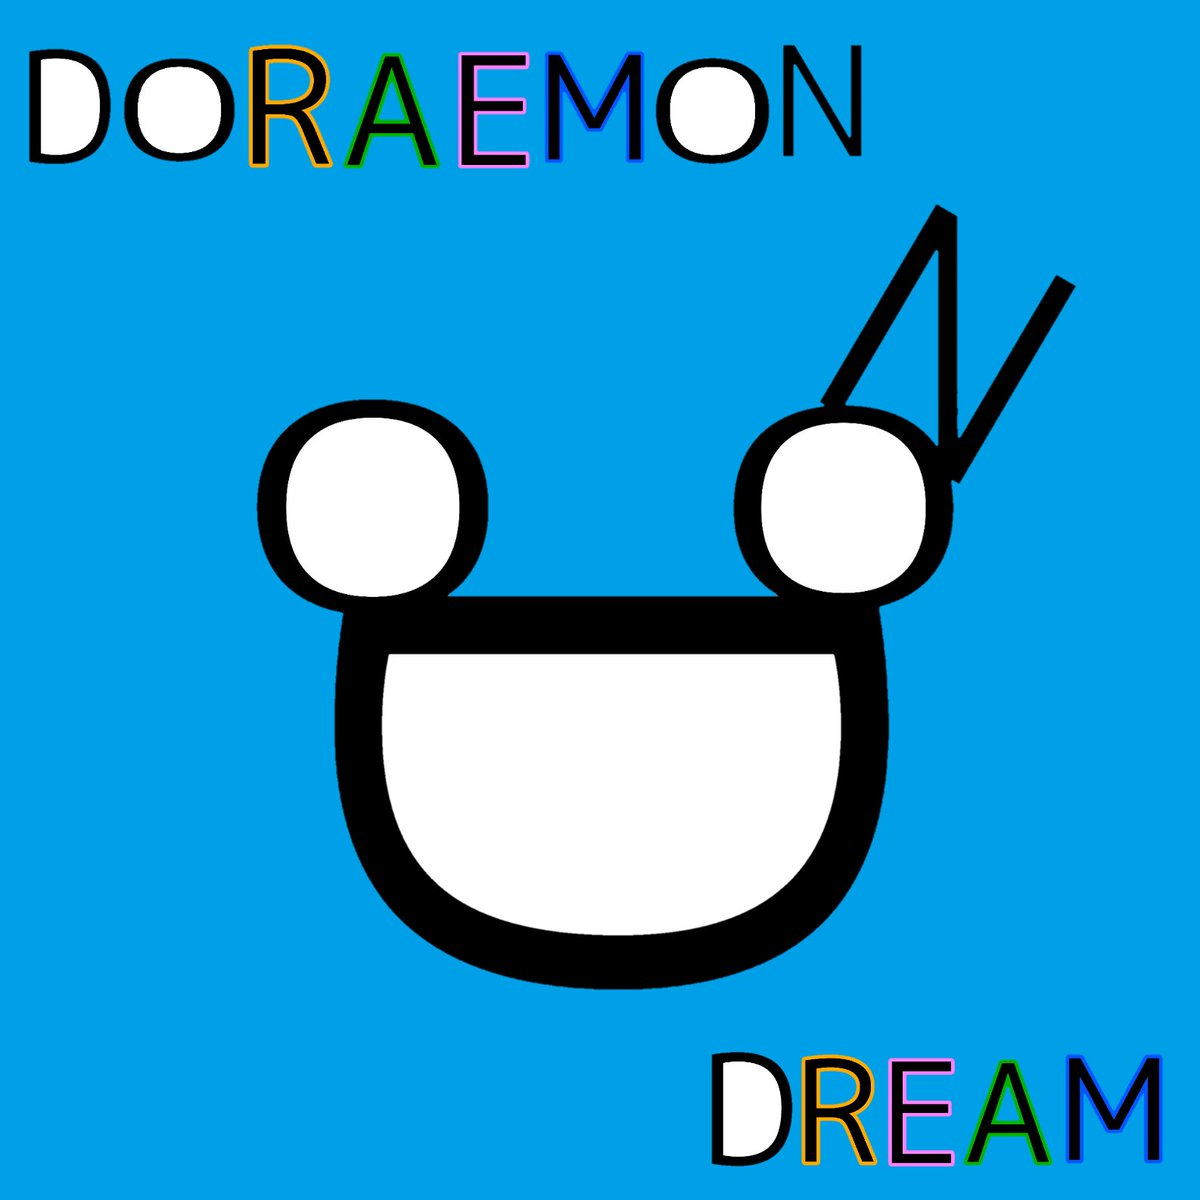 サイトーセーゾー Saitoseizo Pa Twitter 文字絵 ドラえもん ドリーム 文字絵 イラスト ドラえもん ドリーム Doraemon Dream